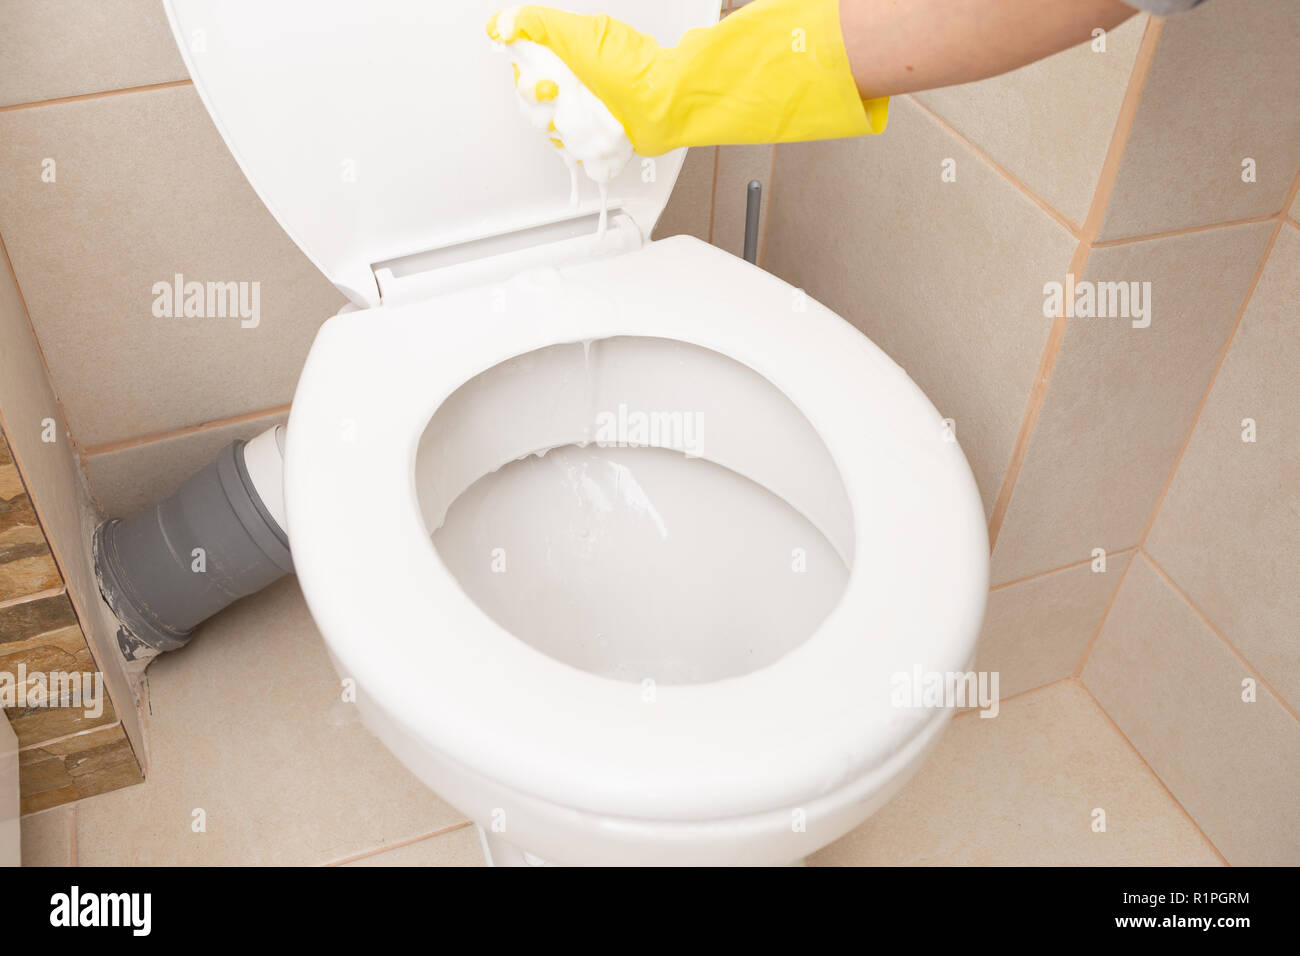 Personne évincer tout en éponge de mousse en porcelaine blanche de la cuvette des toilettes Banque D'Images